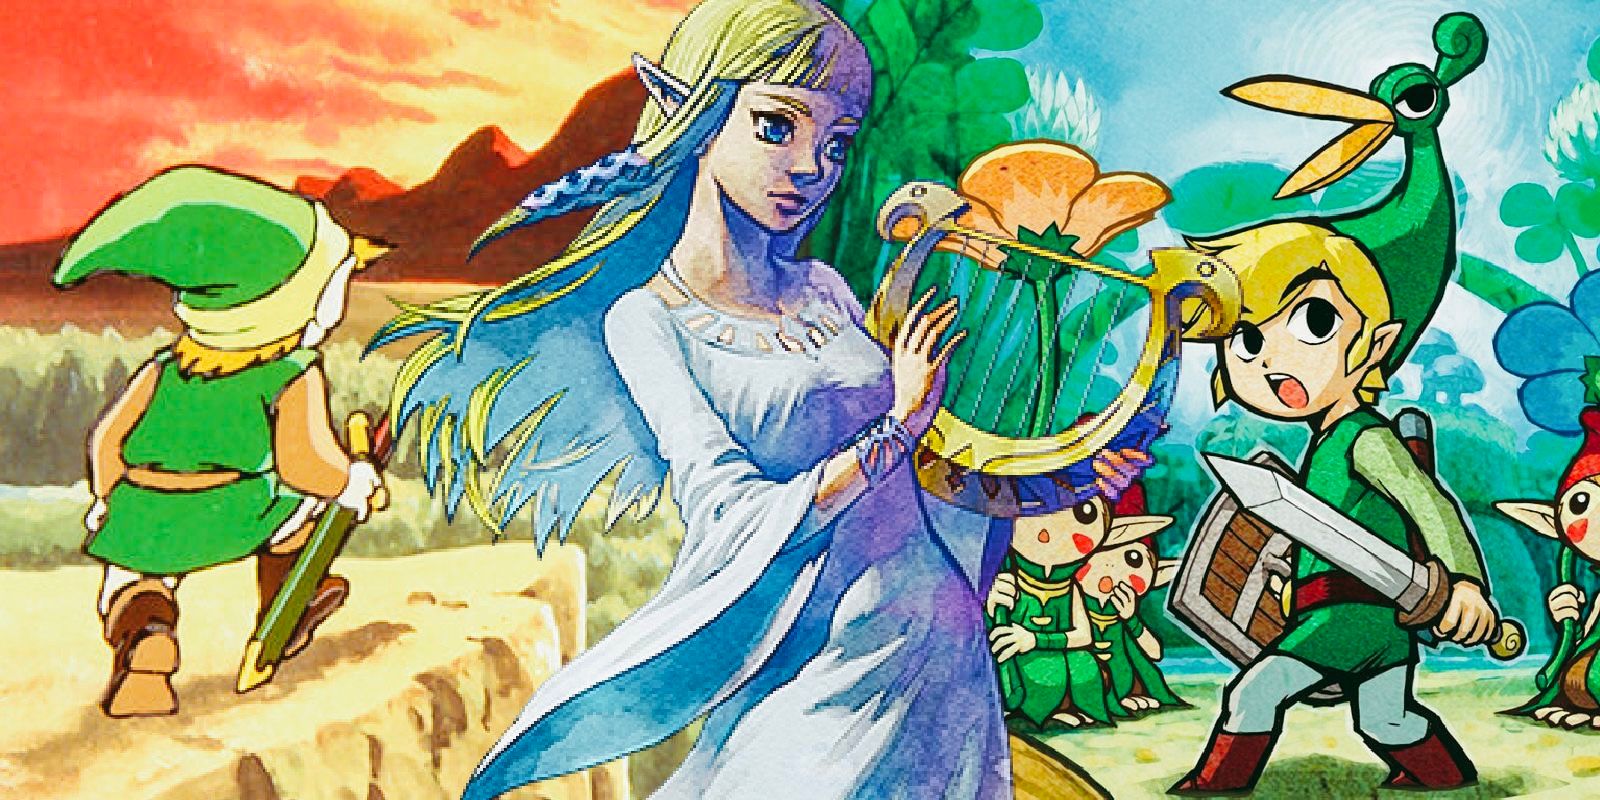 Zelda de Skyward Sword, Link no Zelda original e Minish Cap